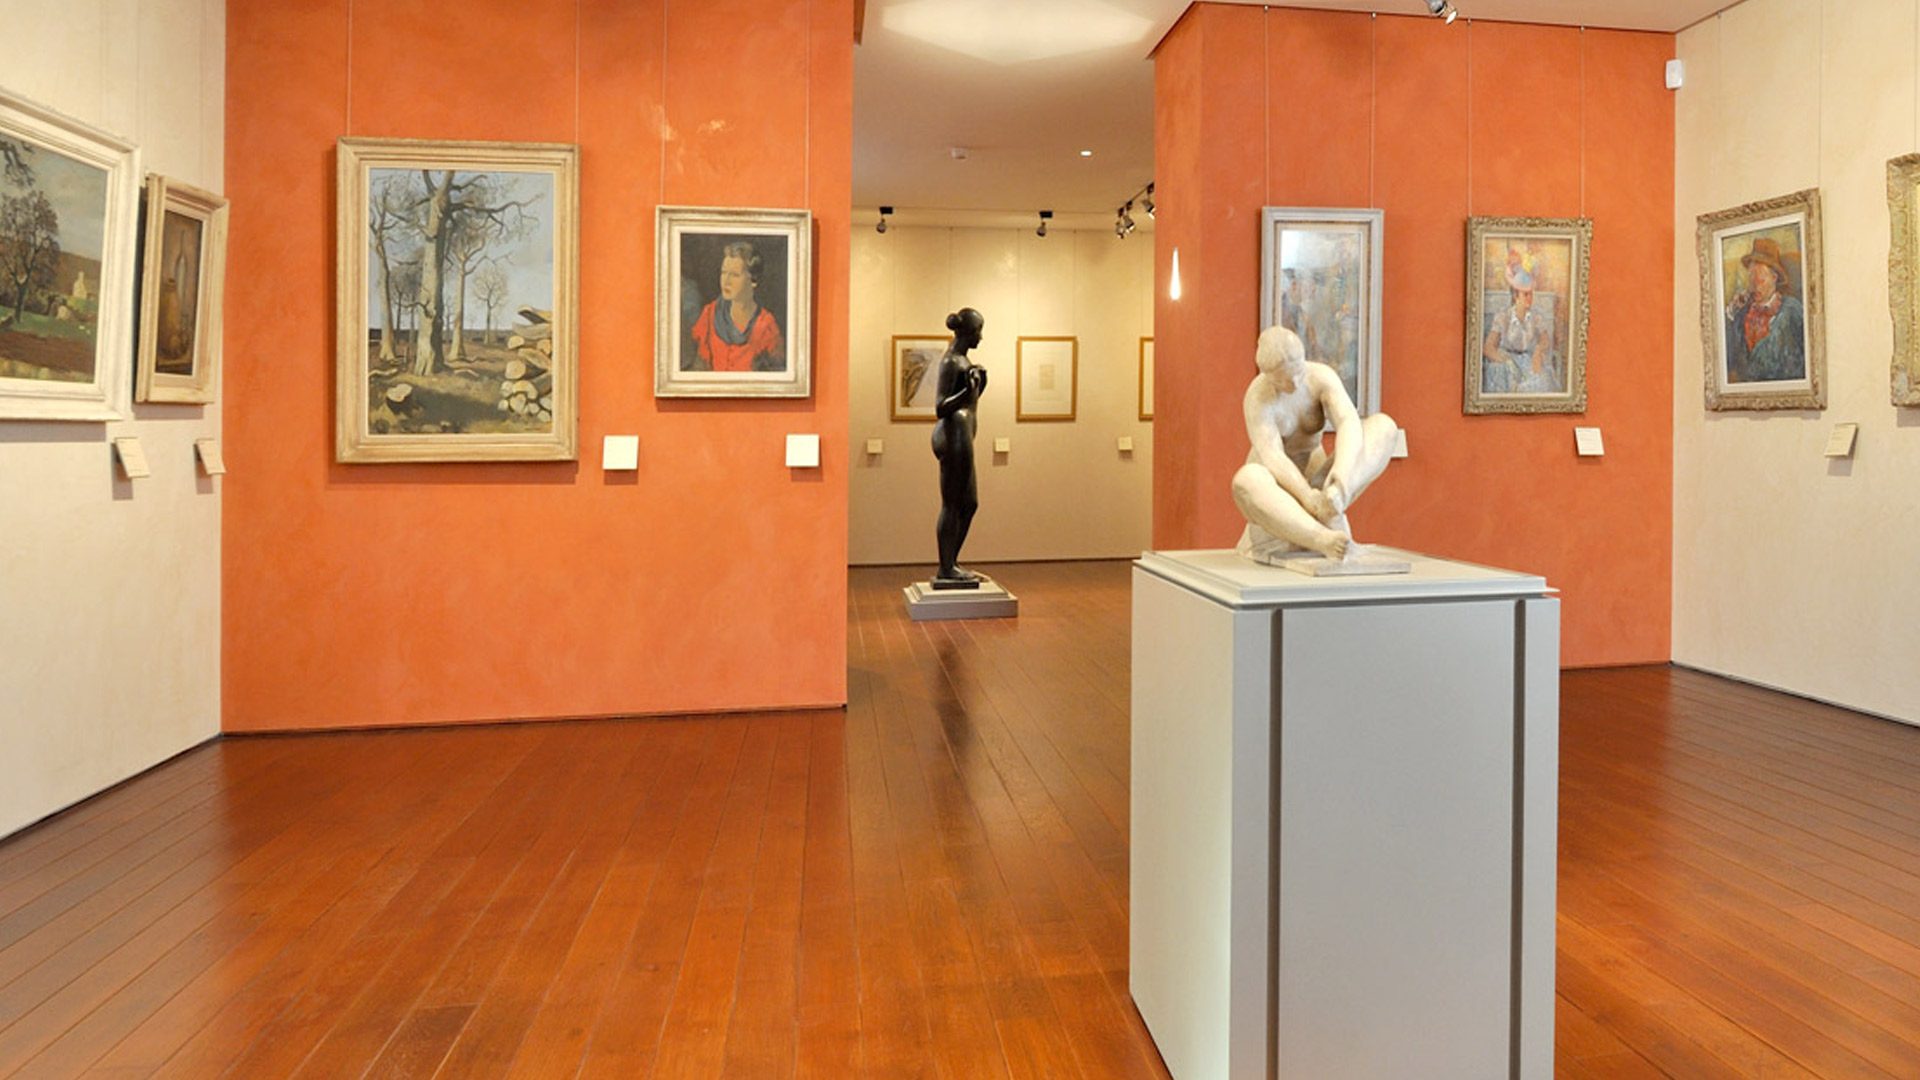 Albi el museu Toulouse-Lautrec i les seves galeries d'art modern: els contemporanis de Toulouse-Lautrec